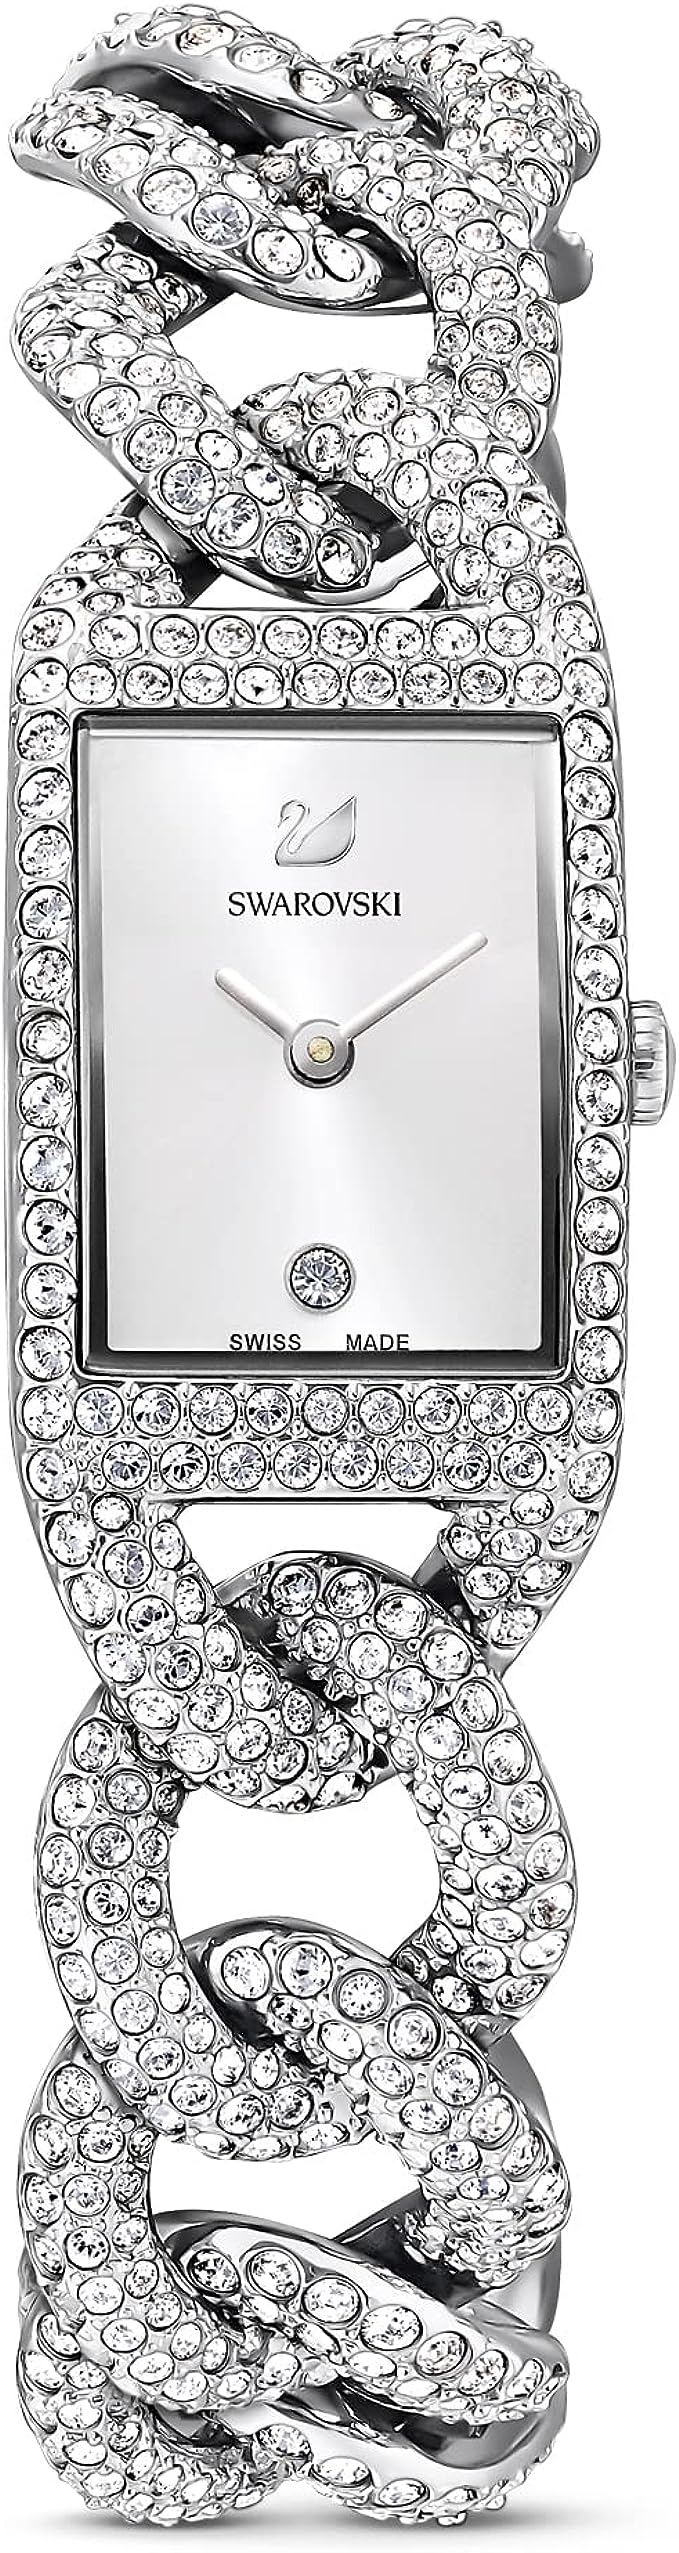 Swarovski Reloj para Mujer, Acero Inoxidable con Cristales Transparentes, de La Colección Cocktail de Swarovski